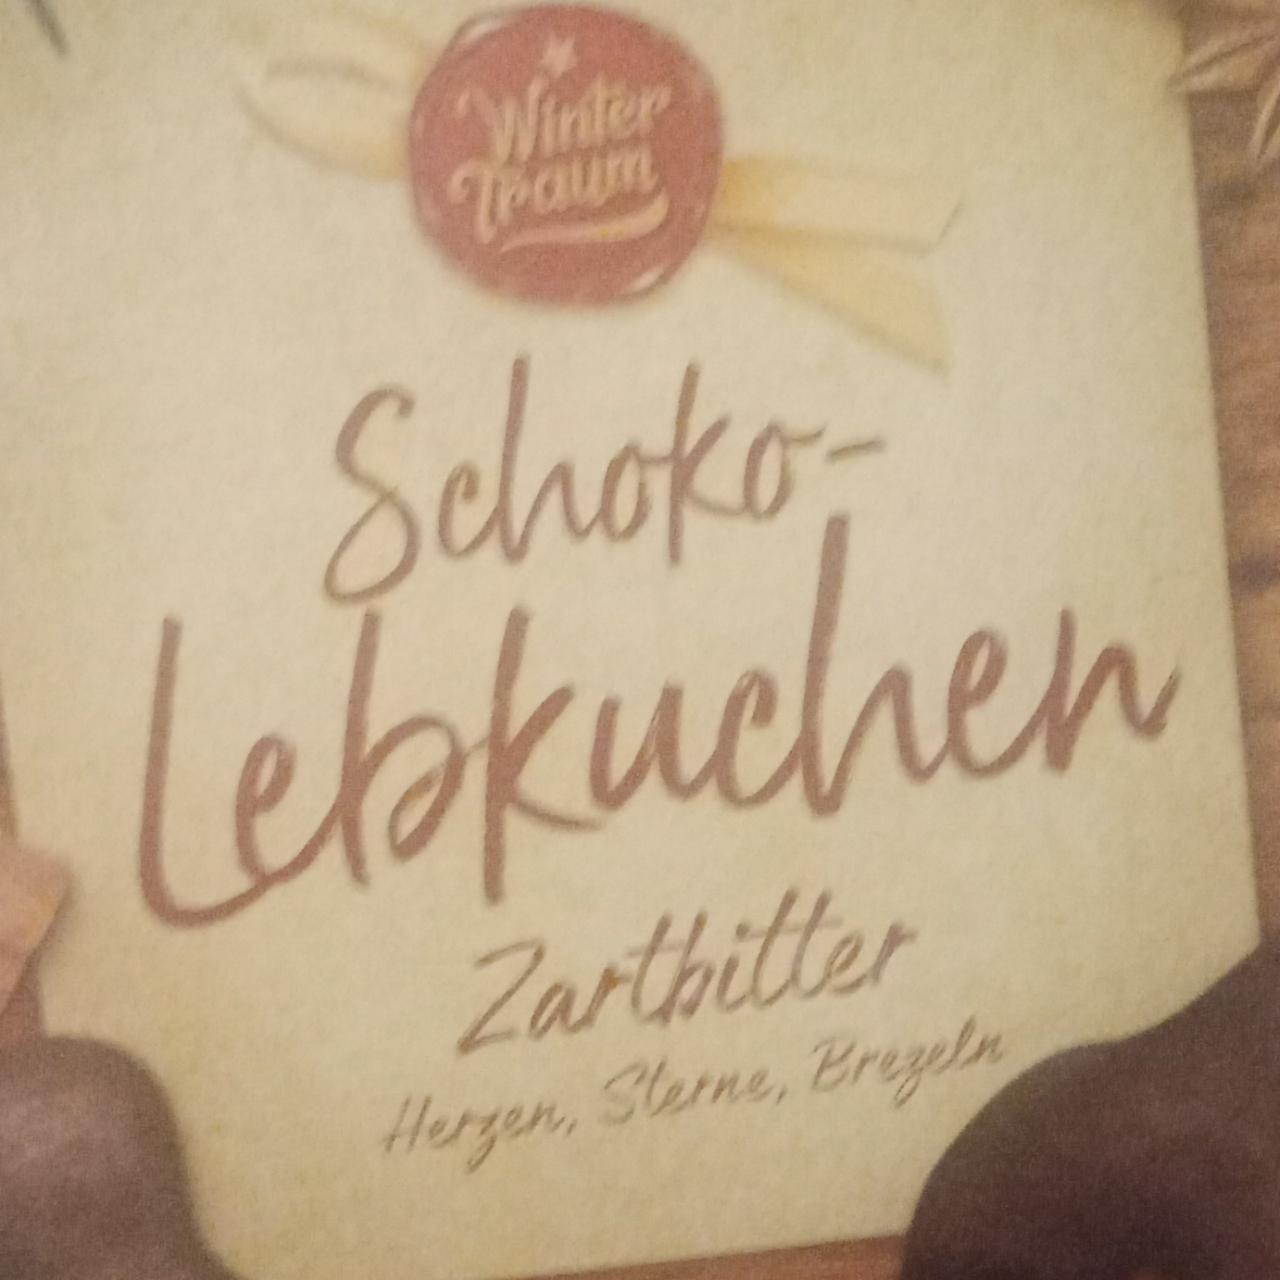 Fotografie - Schoko-Lebkuchen Zartbitter WinterTraum